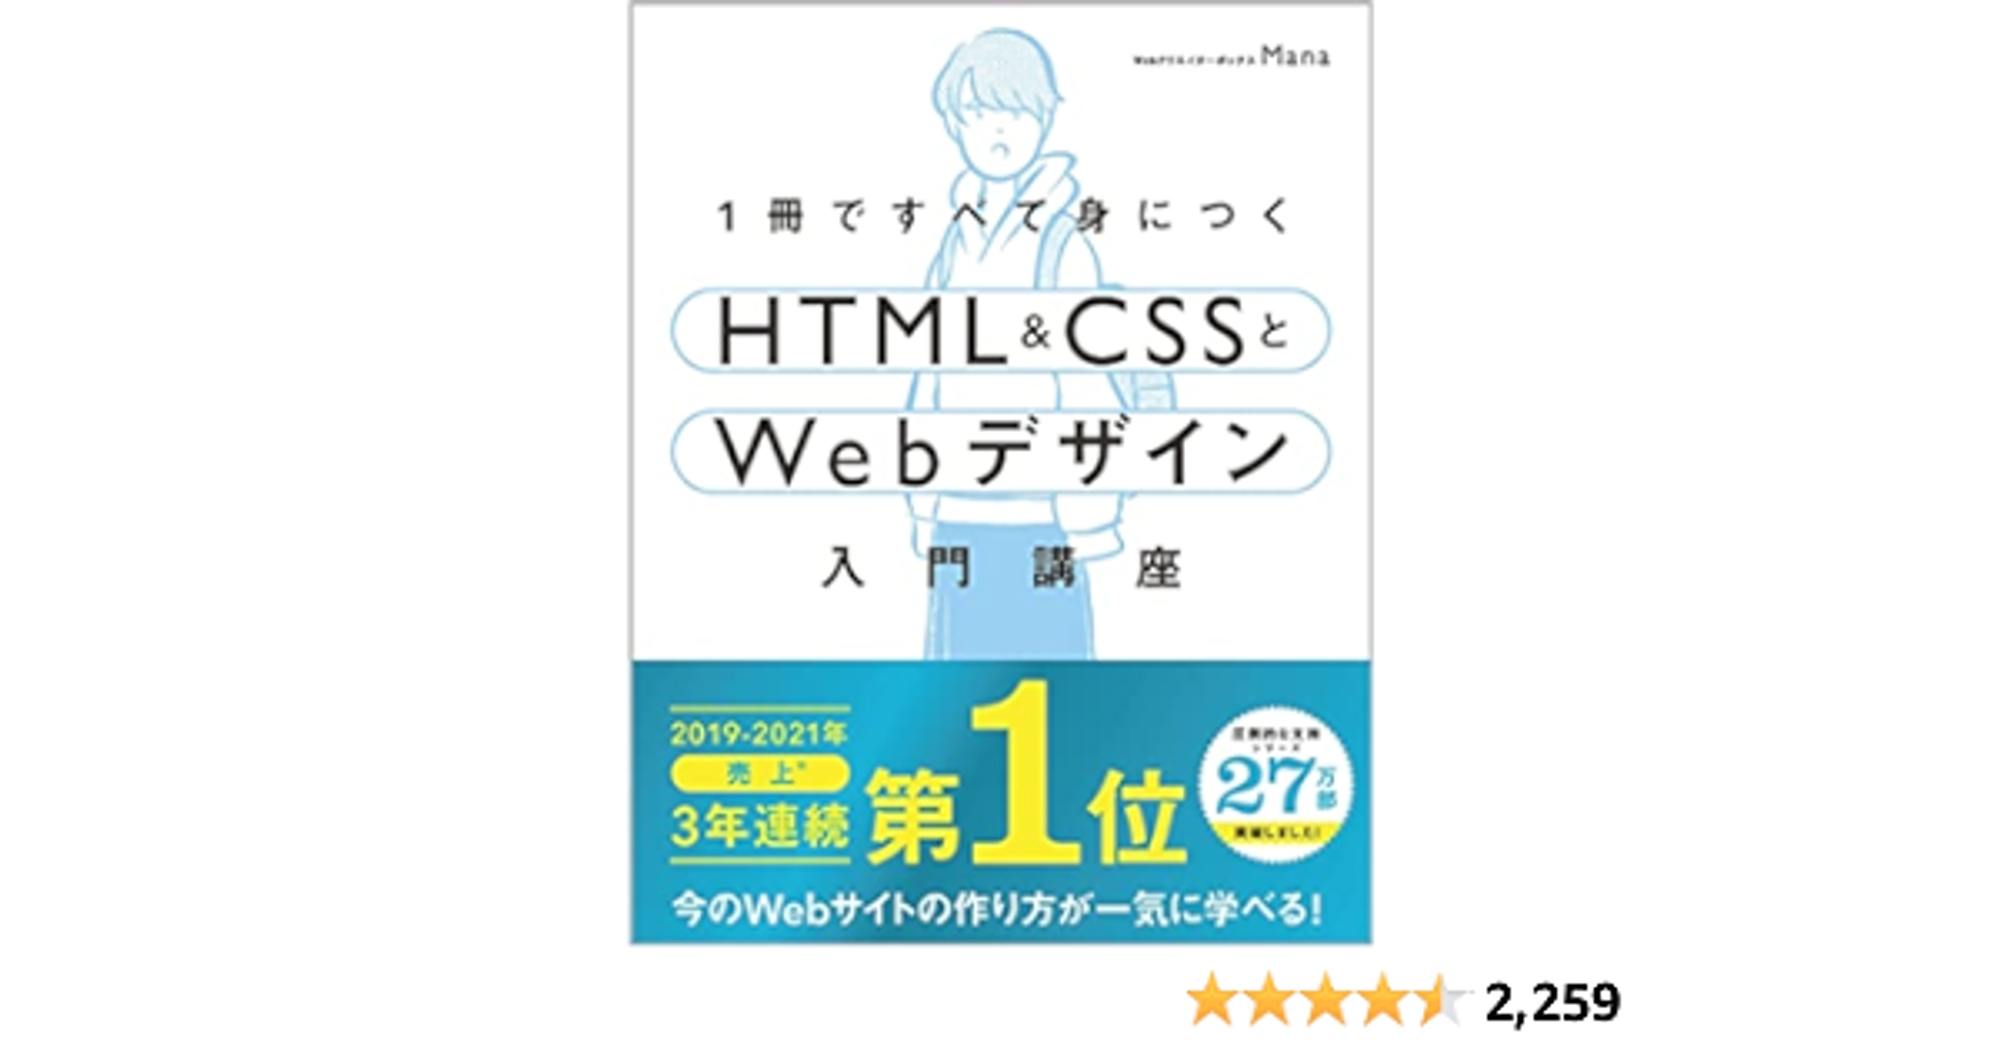 【Amazon.co.jp 限定】1冊ですべて身につくHTML & CSSとWebデザイン入門講座 (DL特典: CSS Flexbox チートシート)